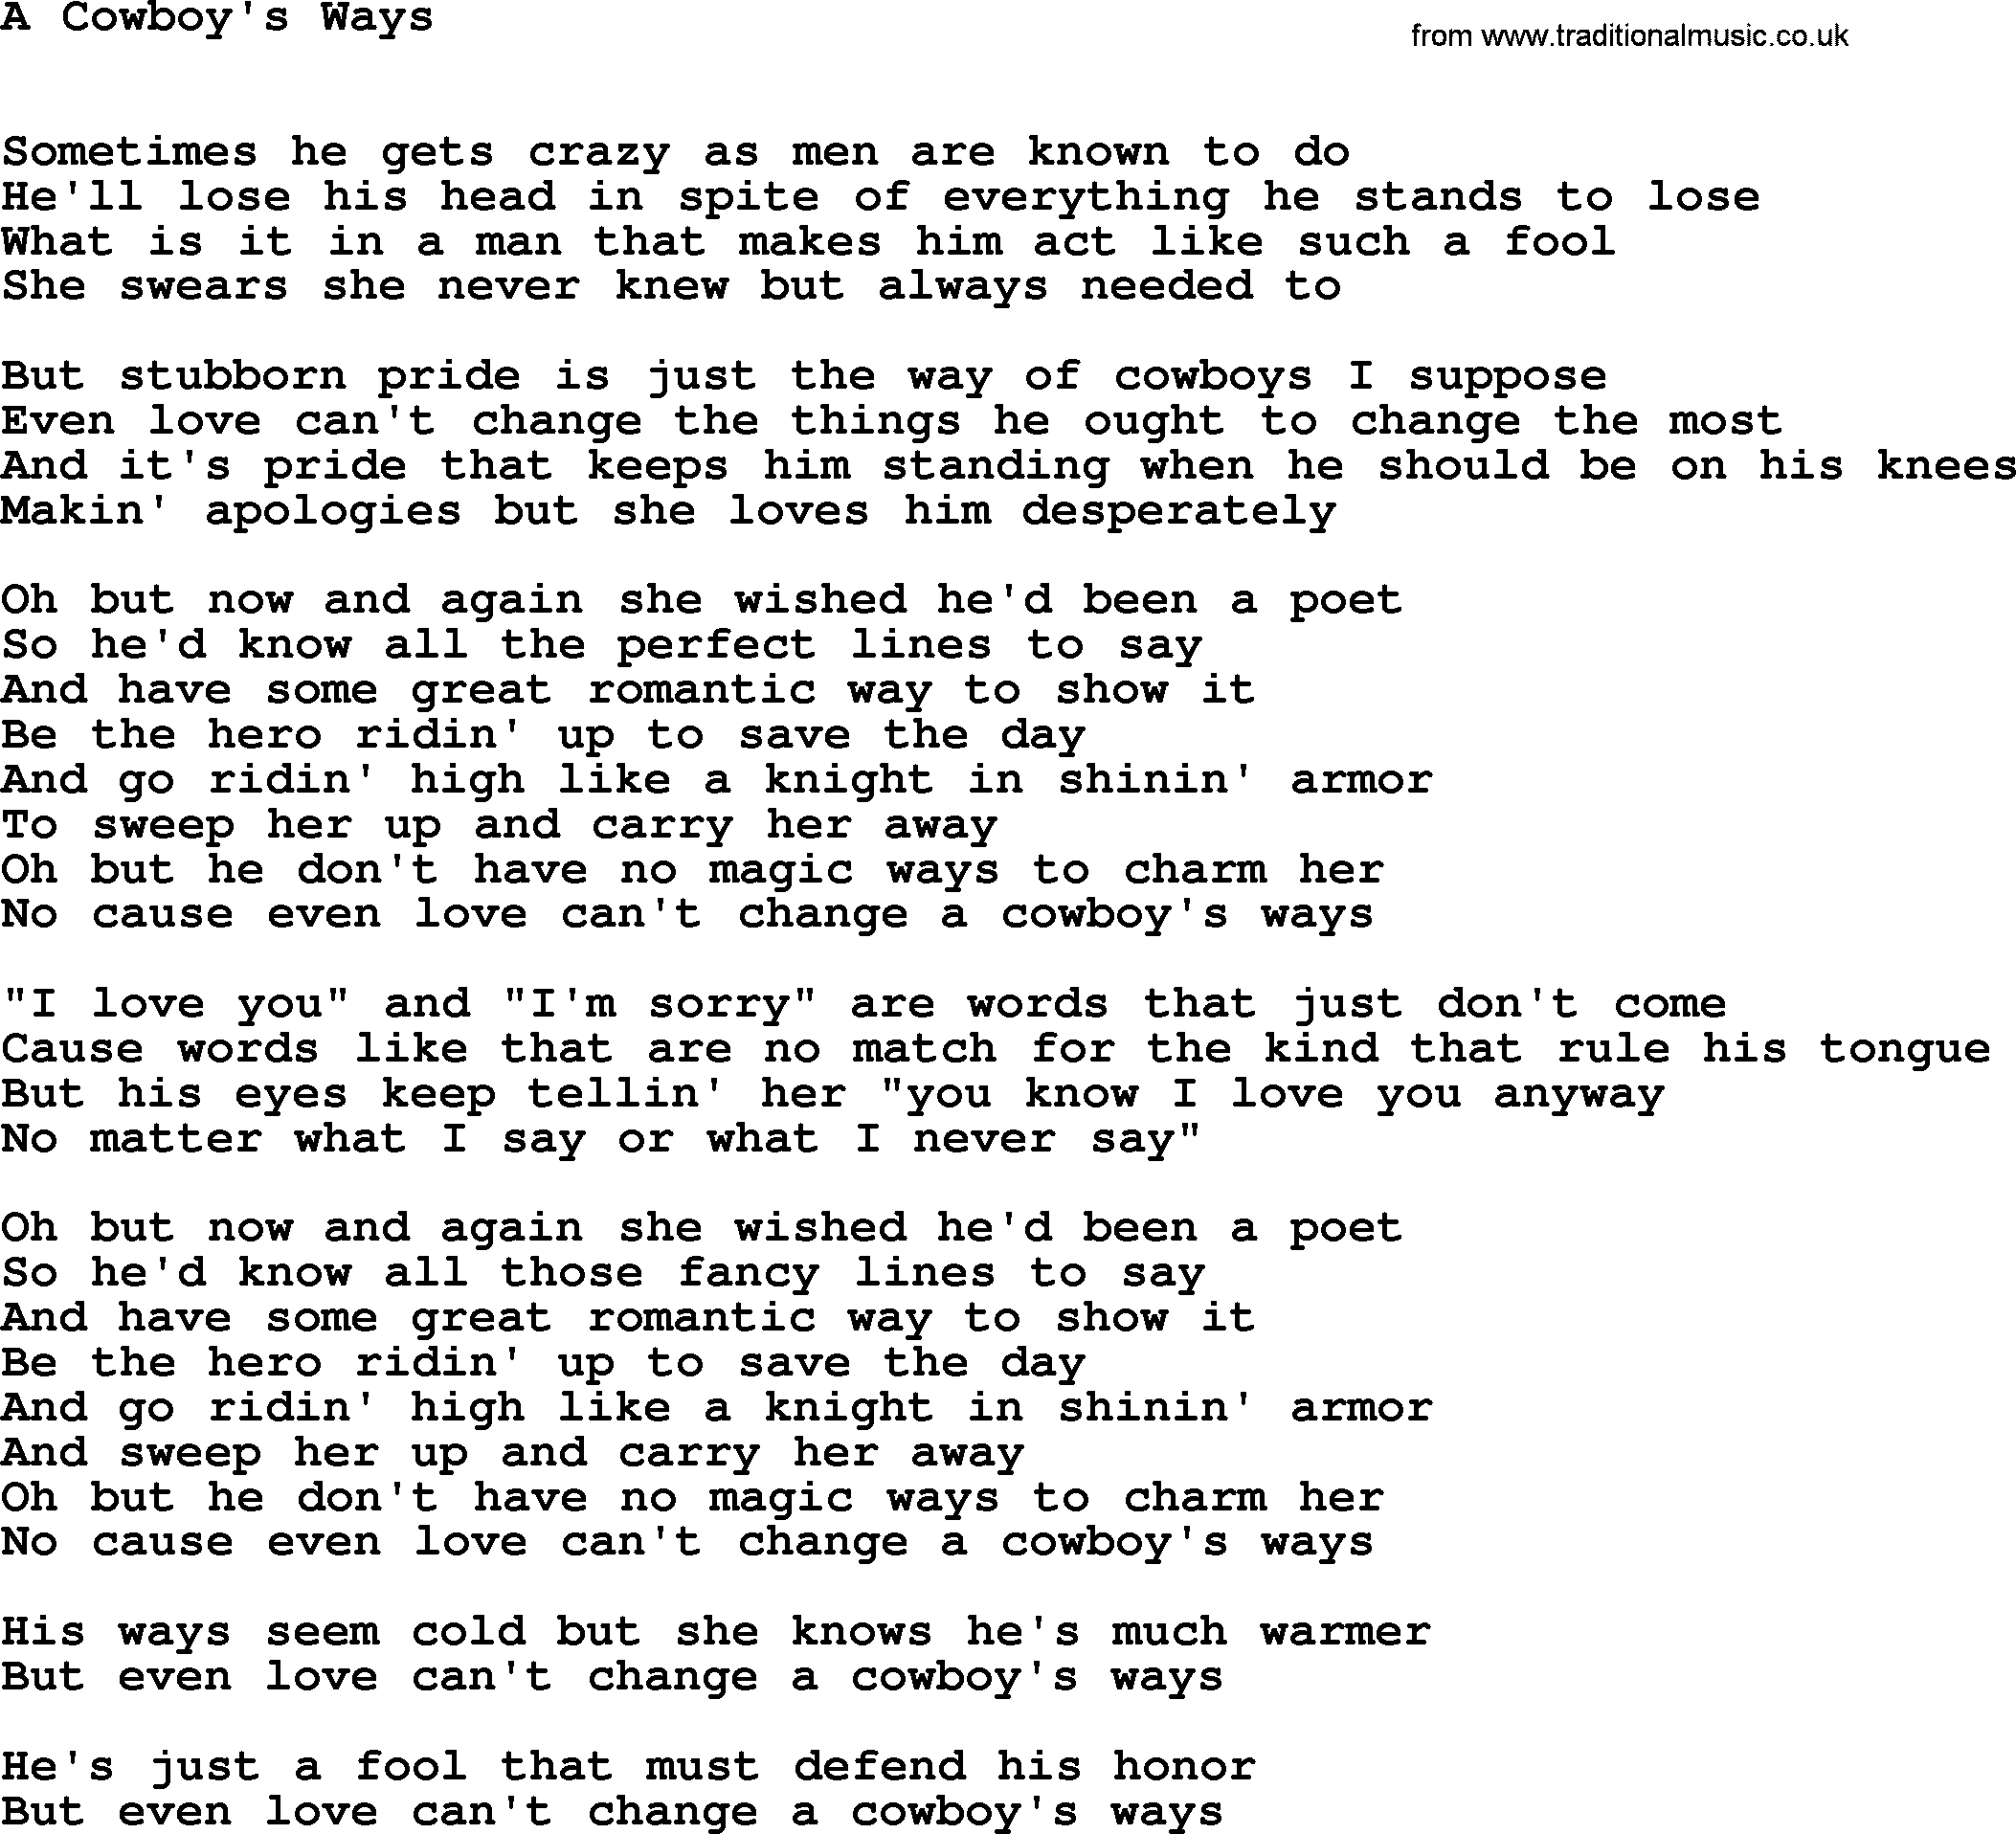 Dolly Parton song: A Cowboy's Ways, lyrics